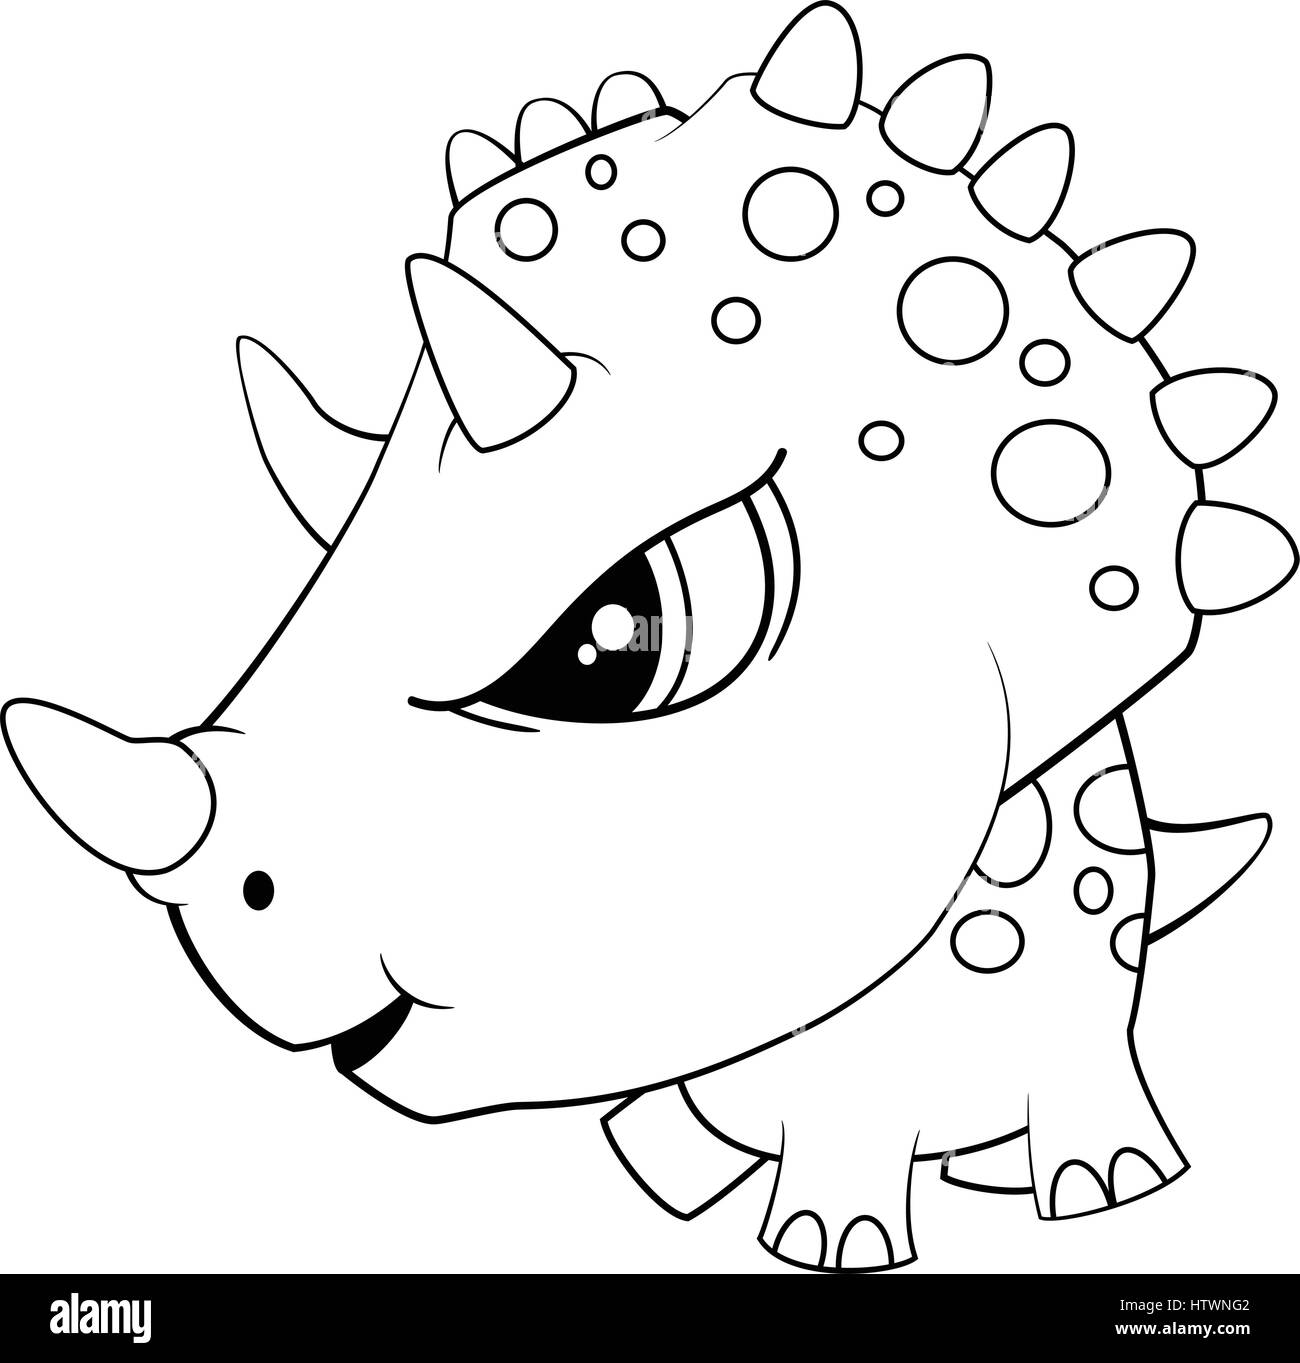 Illustration von niedlichen Cartoon blau Baby Triceratops Dinosaurier. Vektor EPS 8. Stock Vektor